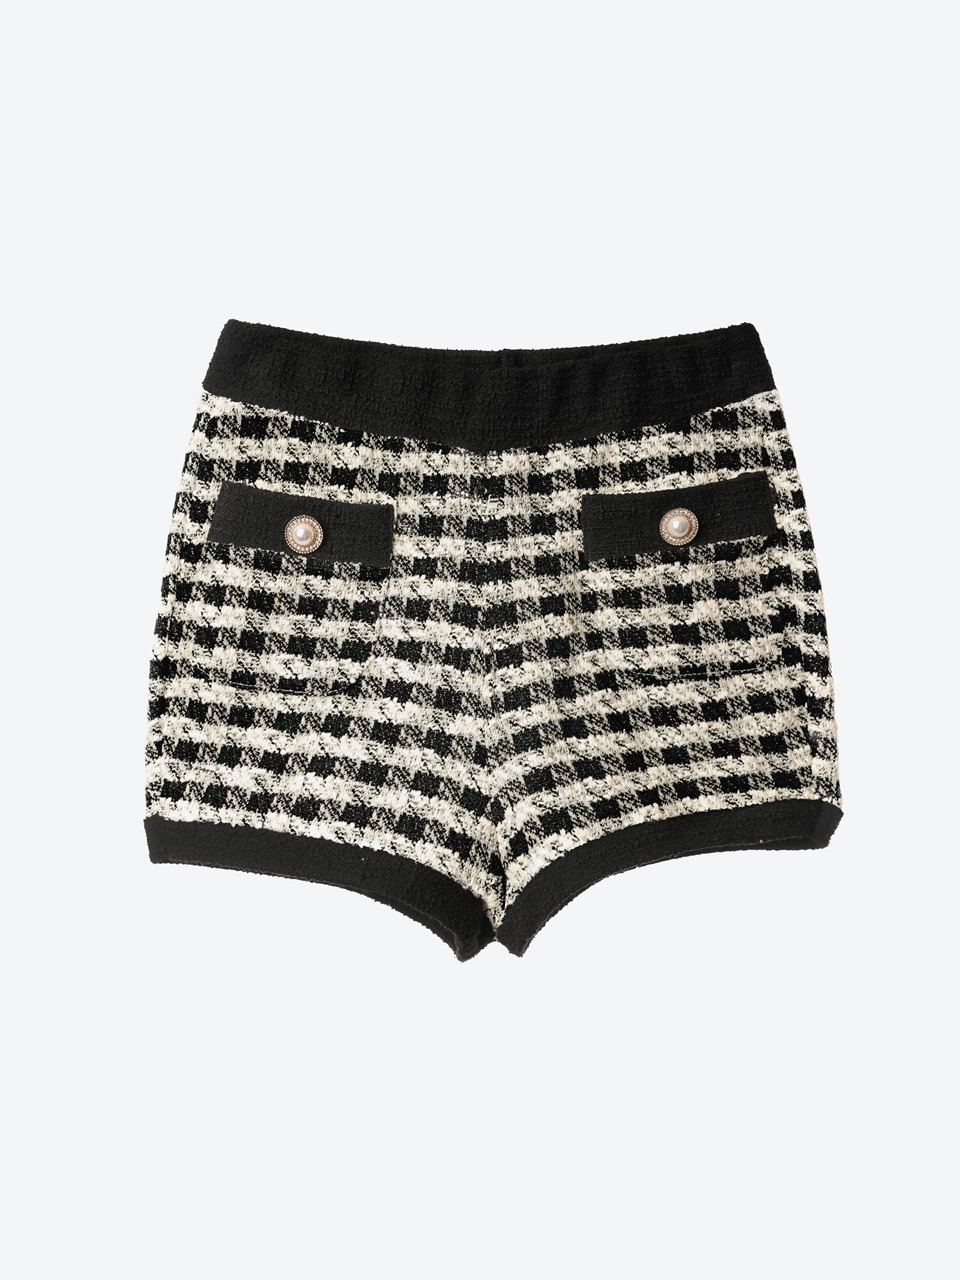 Gingham Bouclé Knit Shorts (black)